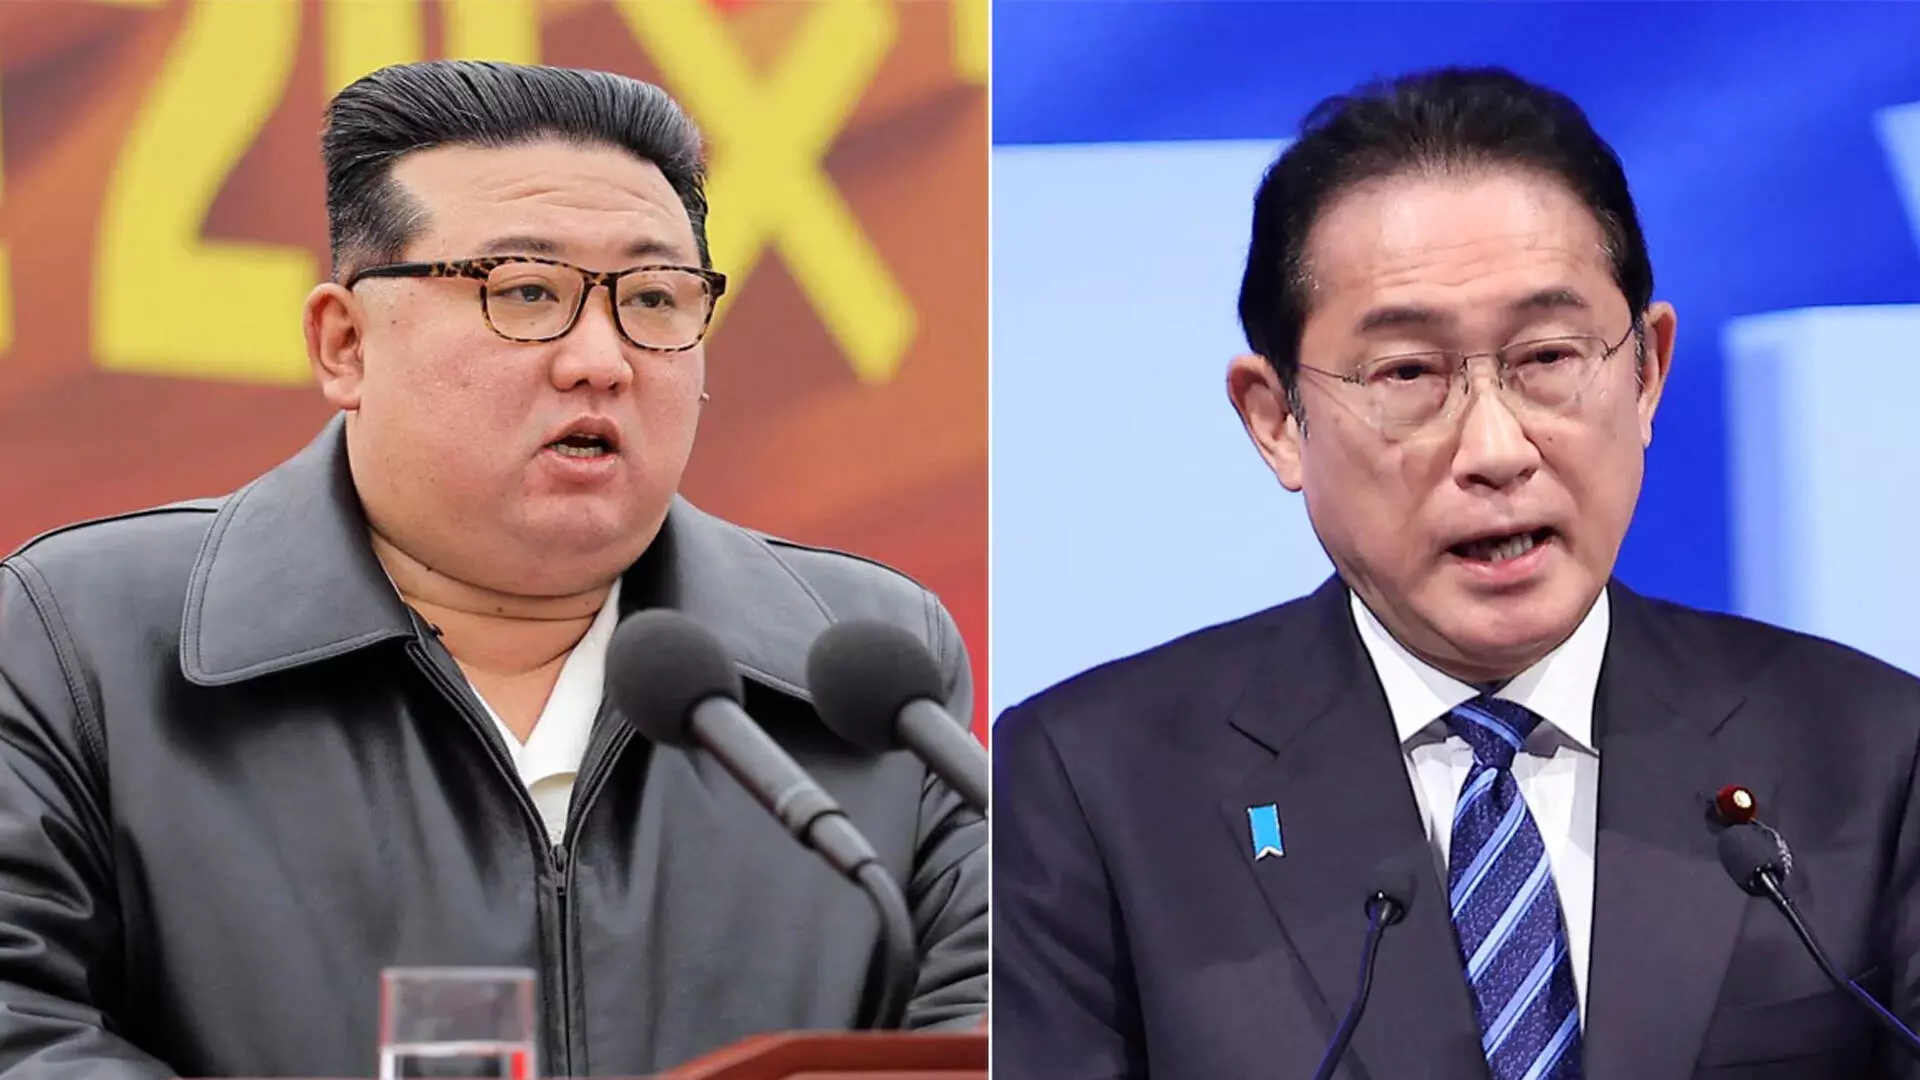 जापान के प्रधानमंत्री फुमियो किशिदा ने किम जोंग उन के साथ शिखर वार्ता का अनुरोध किया: उत्तर कोरिया